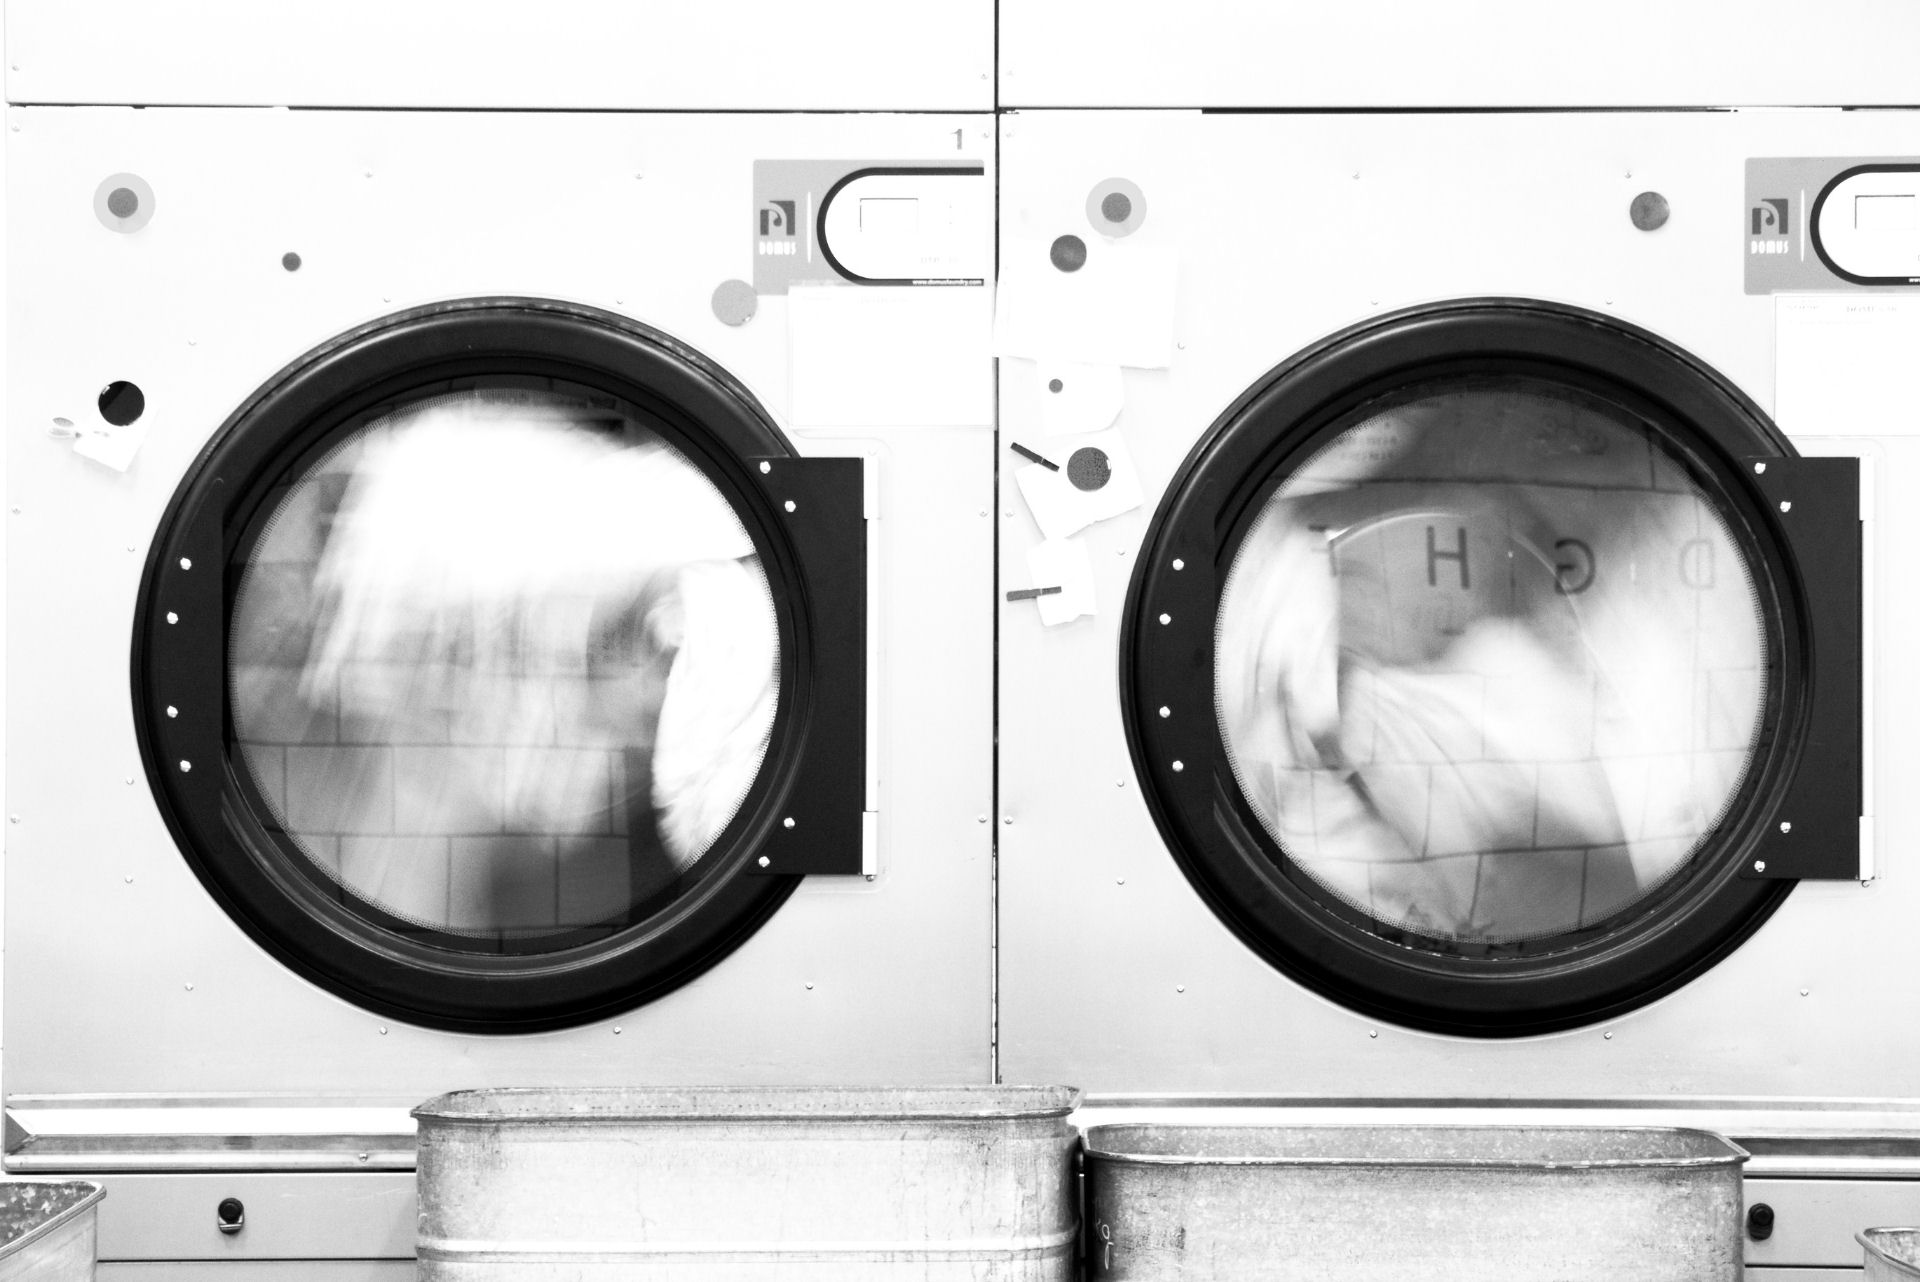 <p><strong>Velké praní<br />
nechte na nás</strong><br />
Profesionální prádelna s 30letou tradicí.</p>
